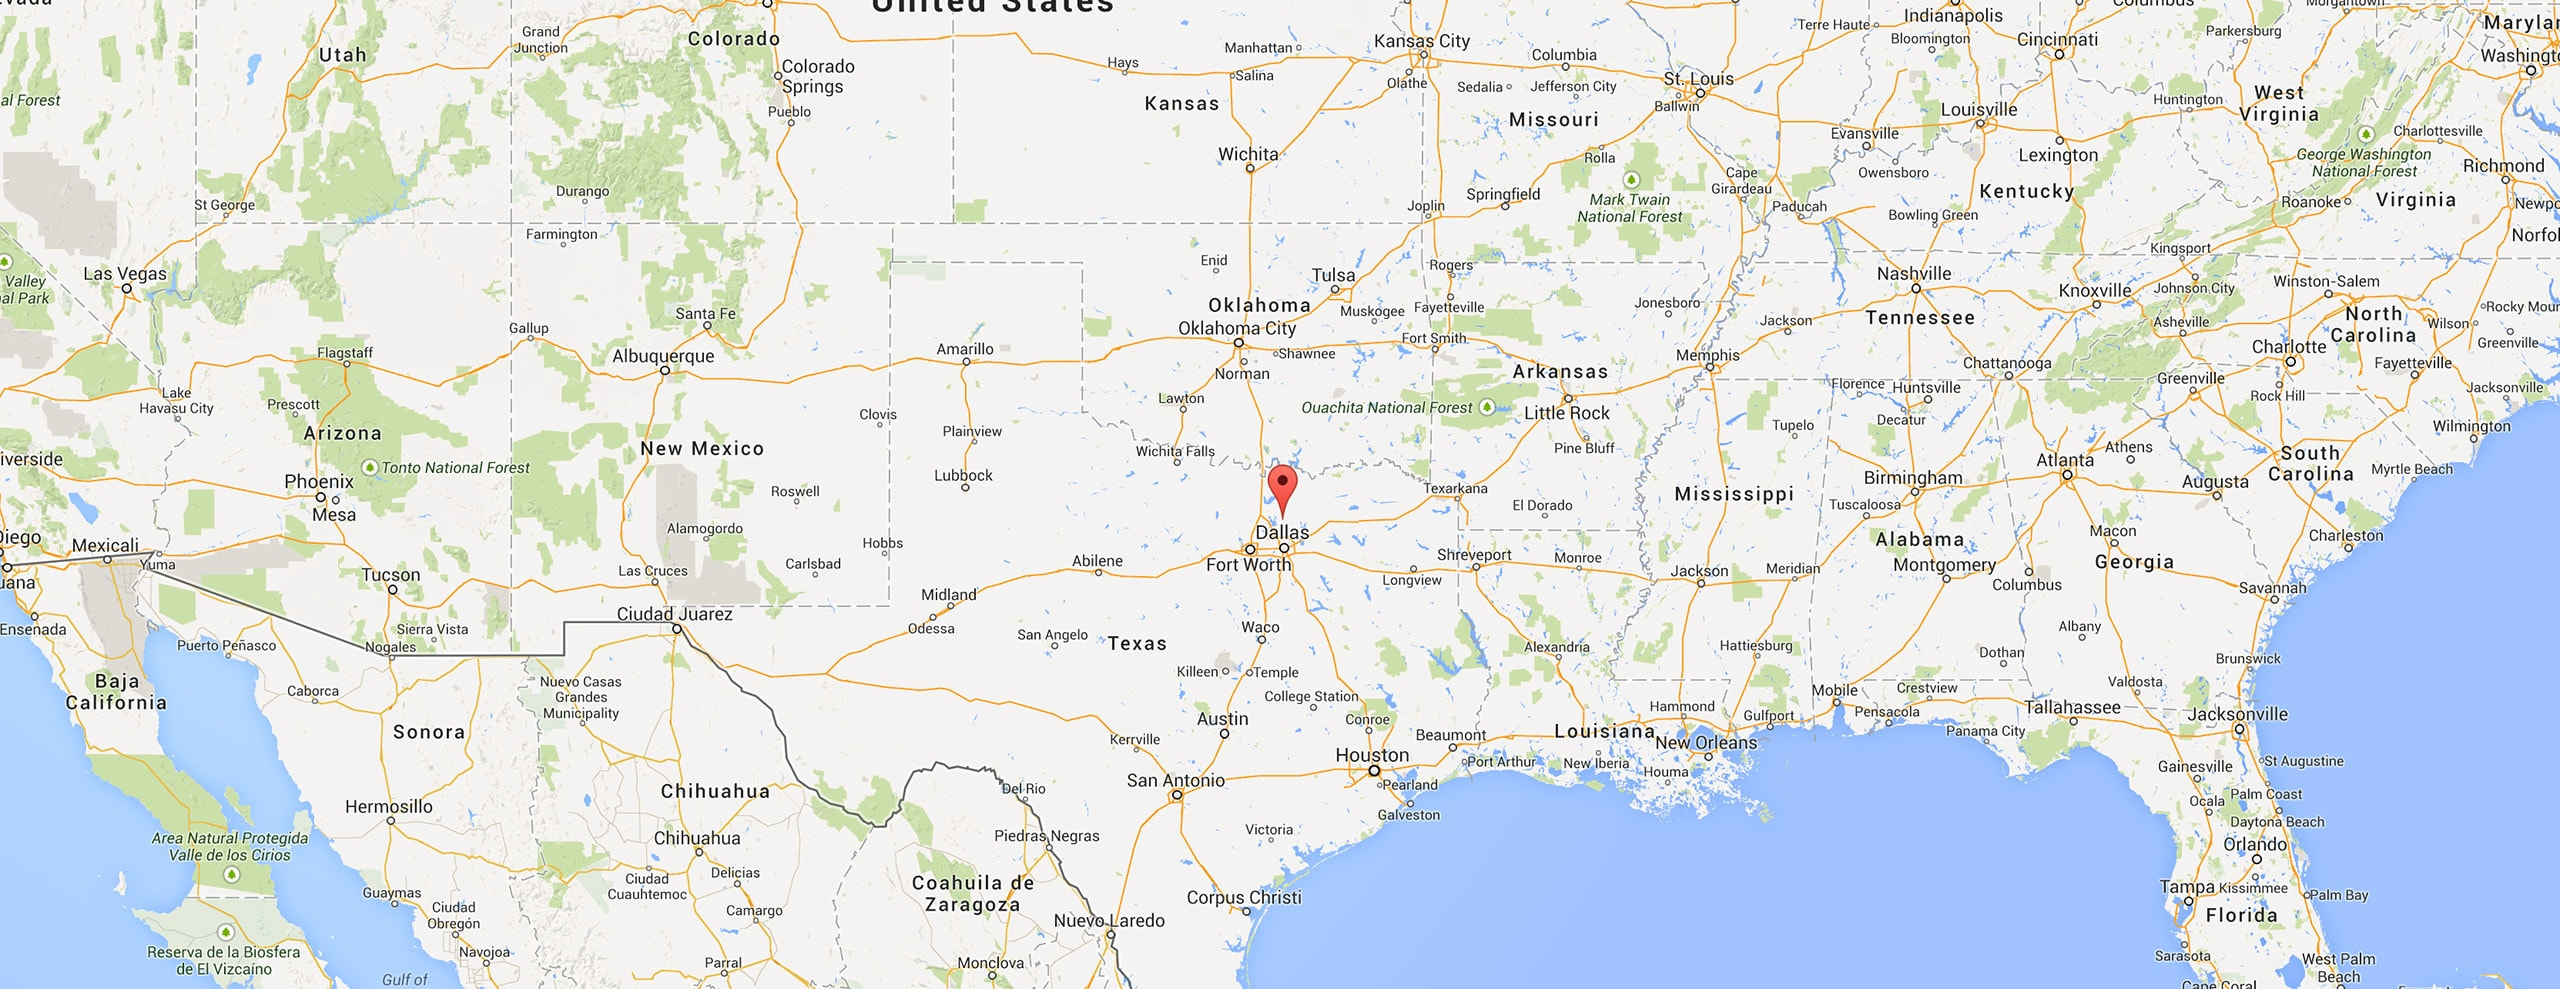 Where Is Frisco Texas? - Frisco Texas Map